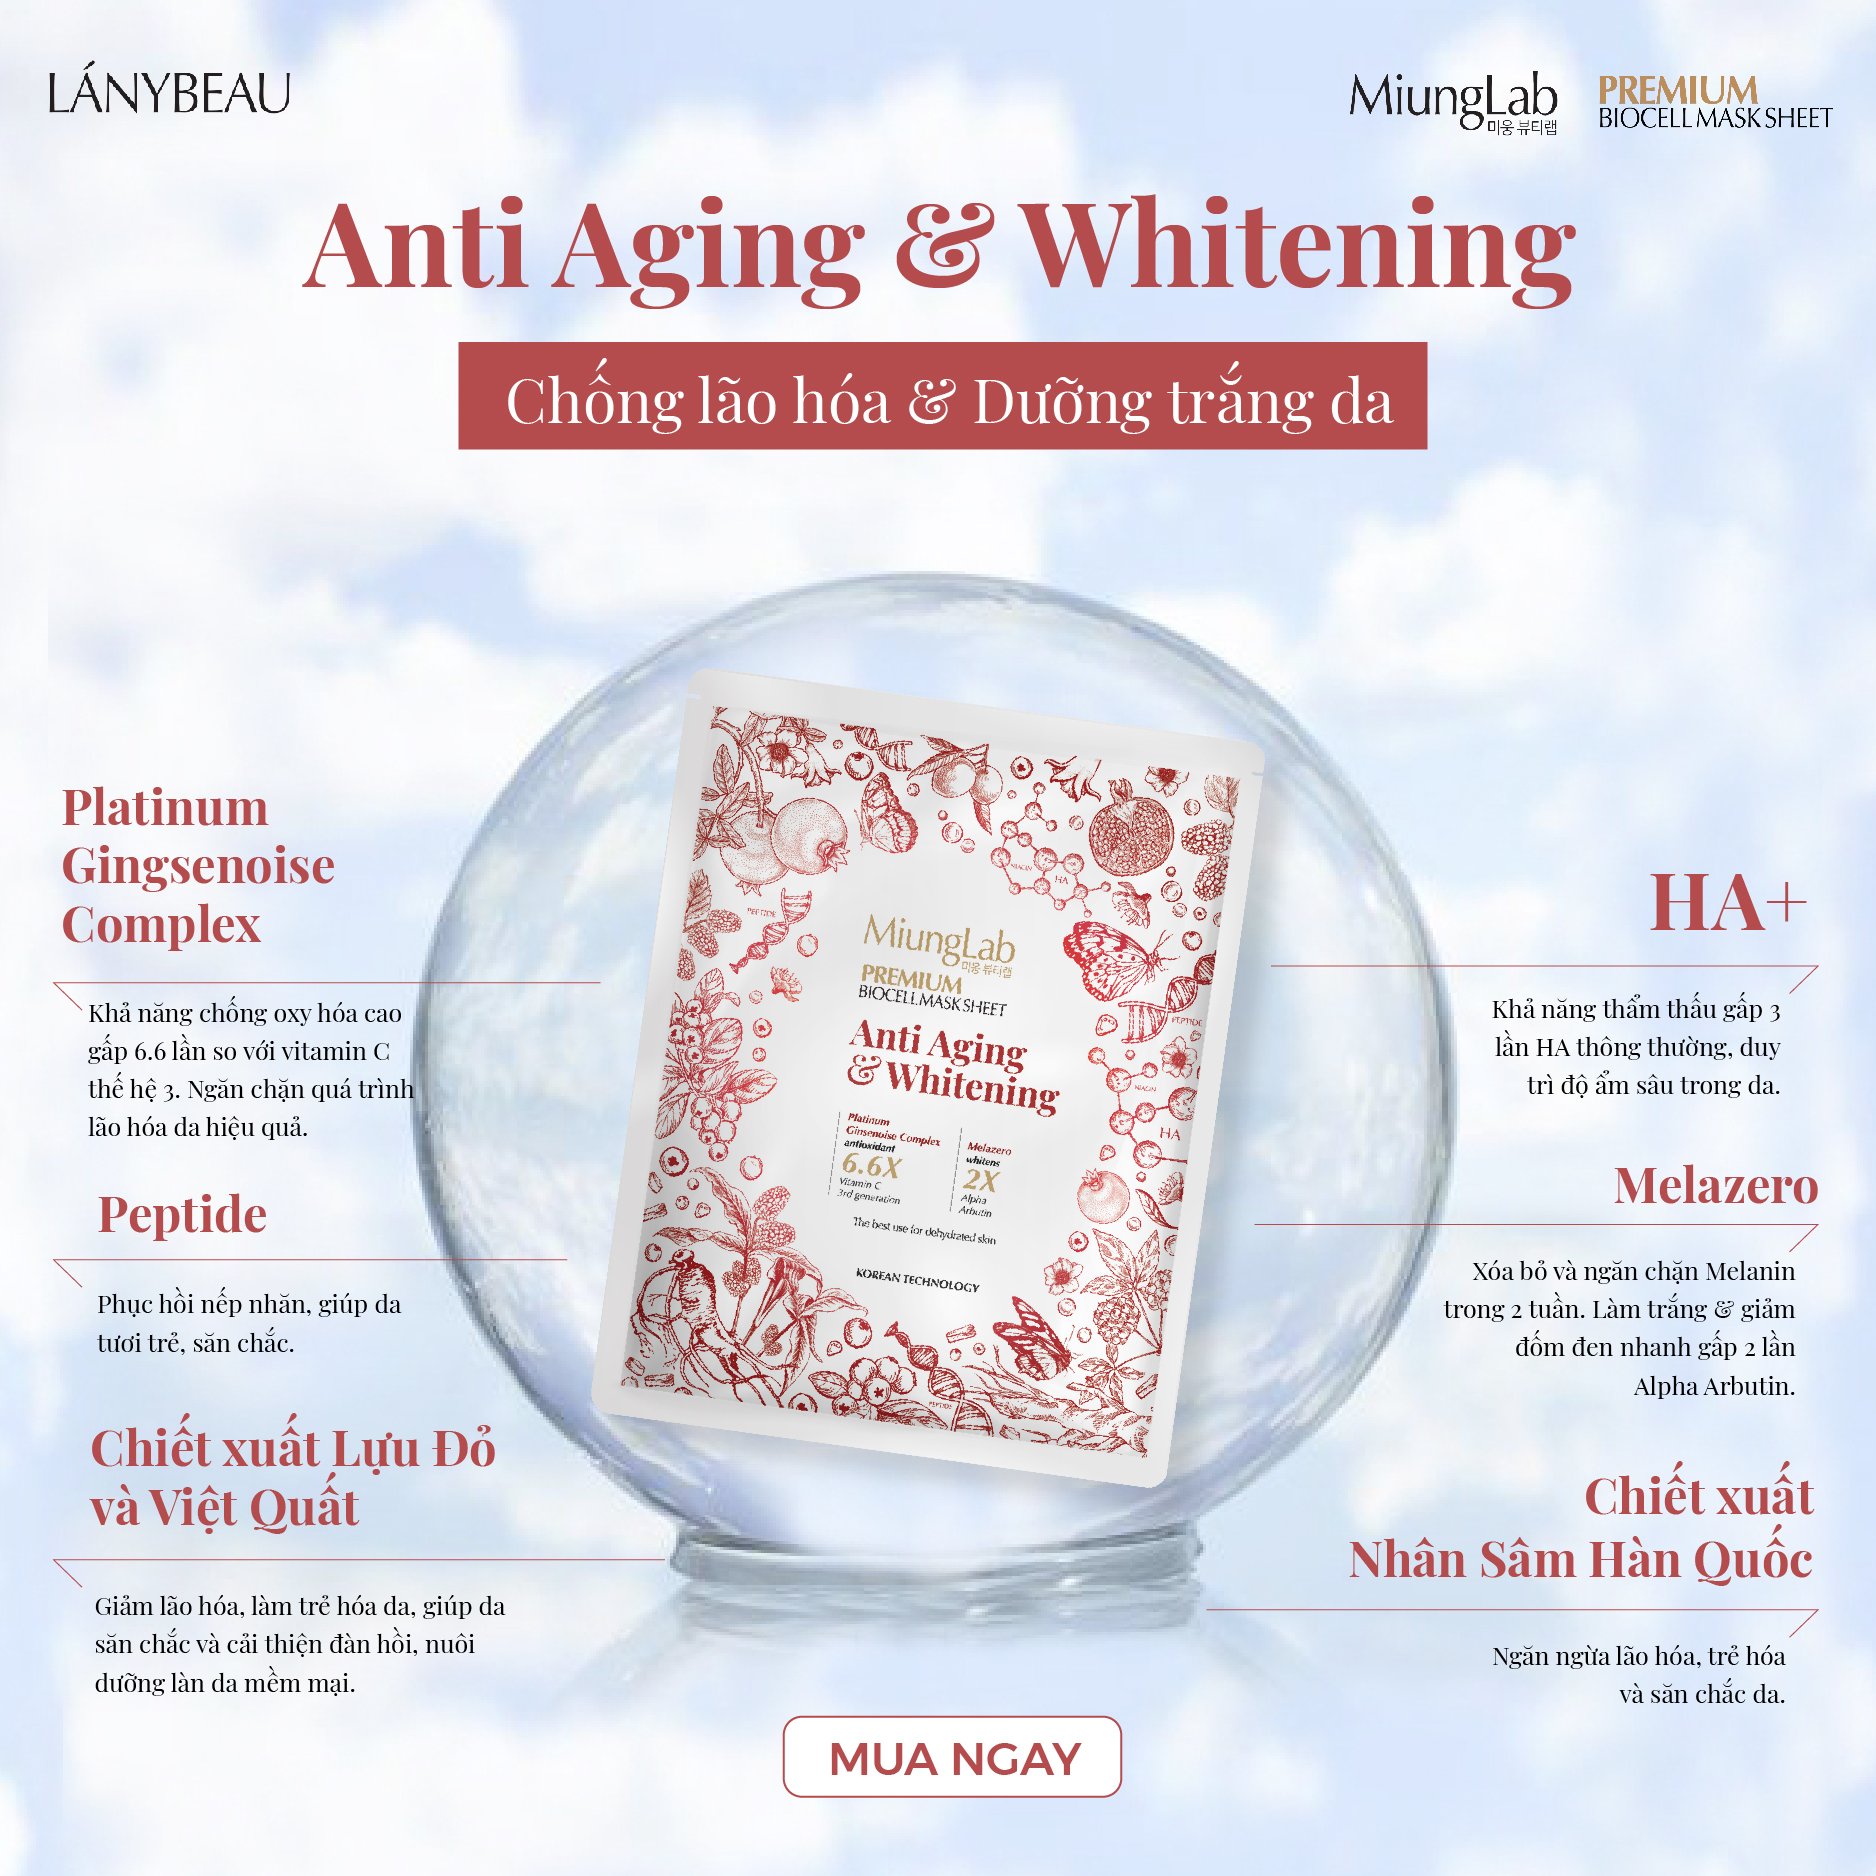 Mặt nạ chống lão hóa và dưỡng trắng da MiungLab Premium Biocell Mask Sheet Anti-Aging and Whitening 25g